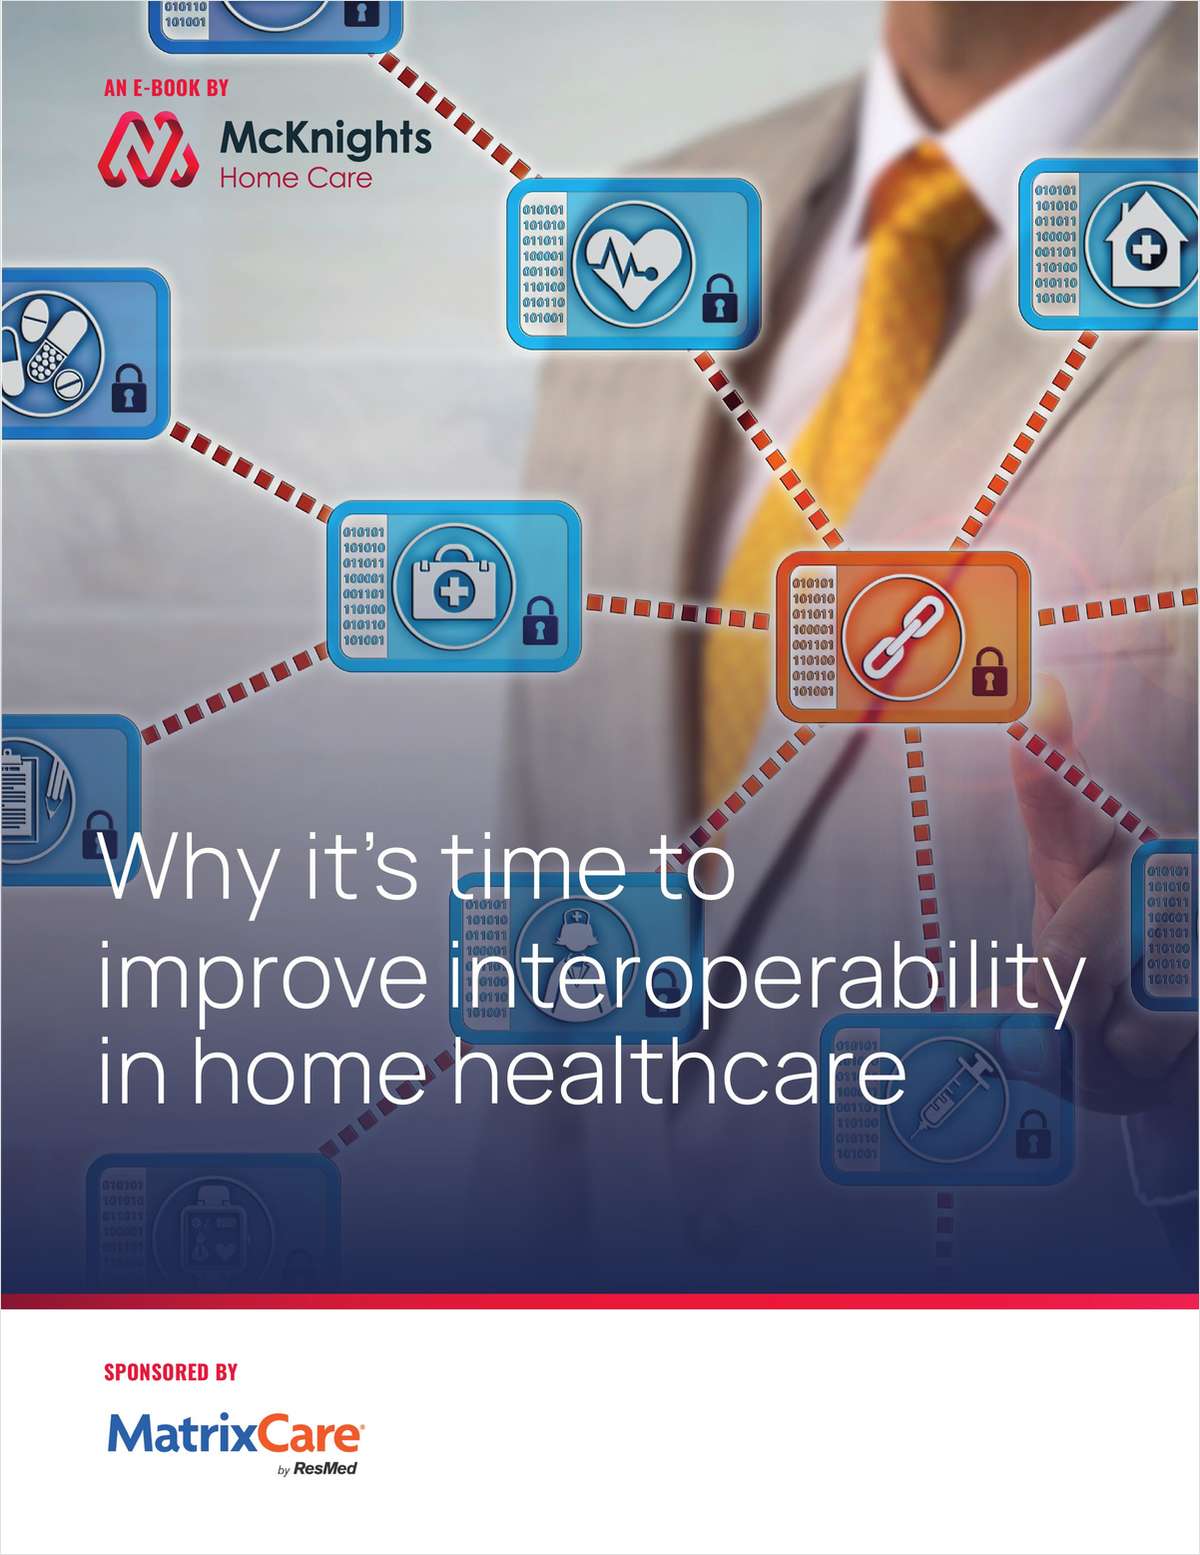 Seize the day: Home health interoperability